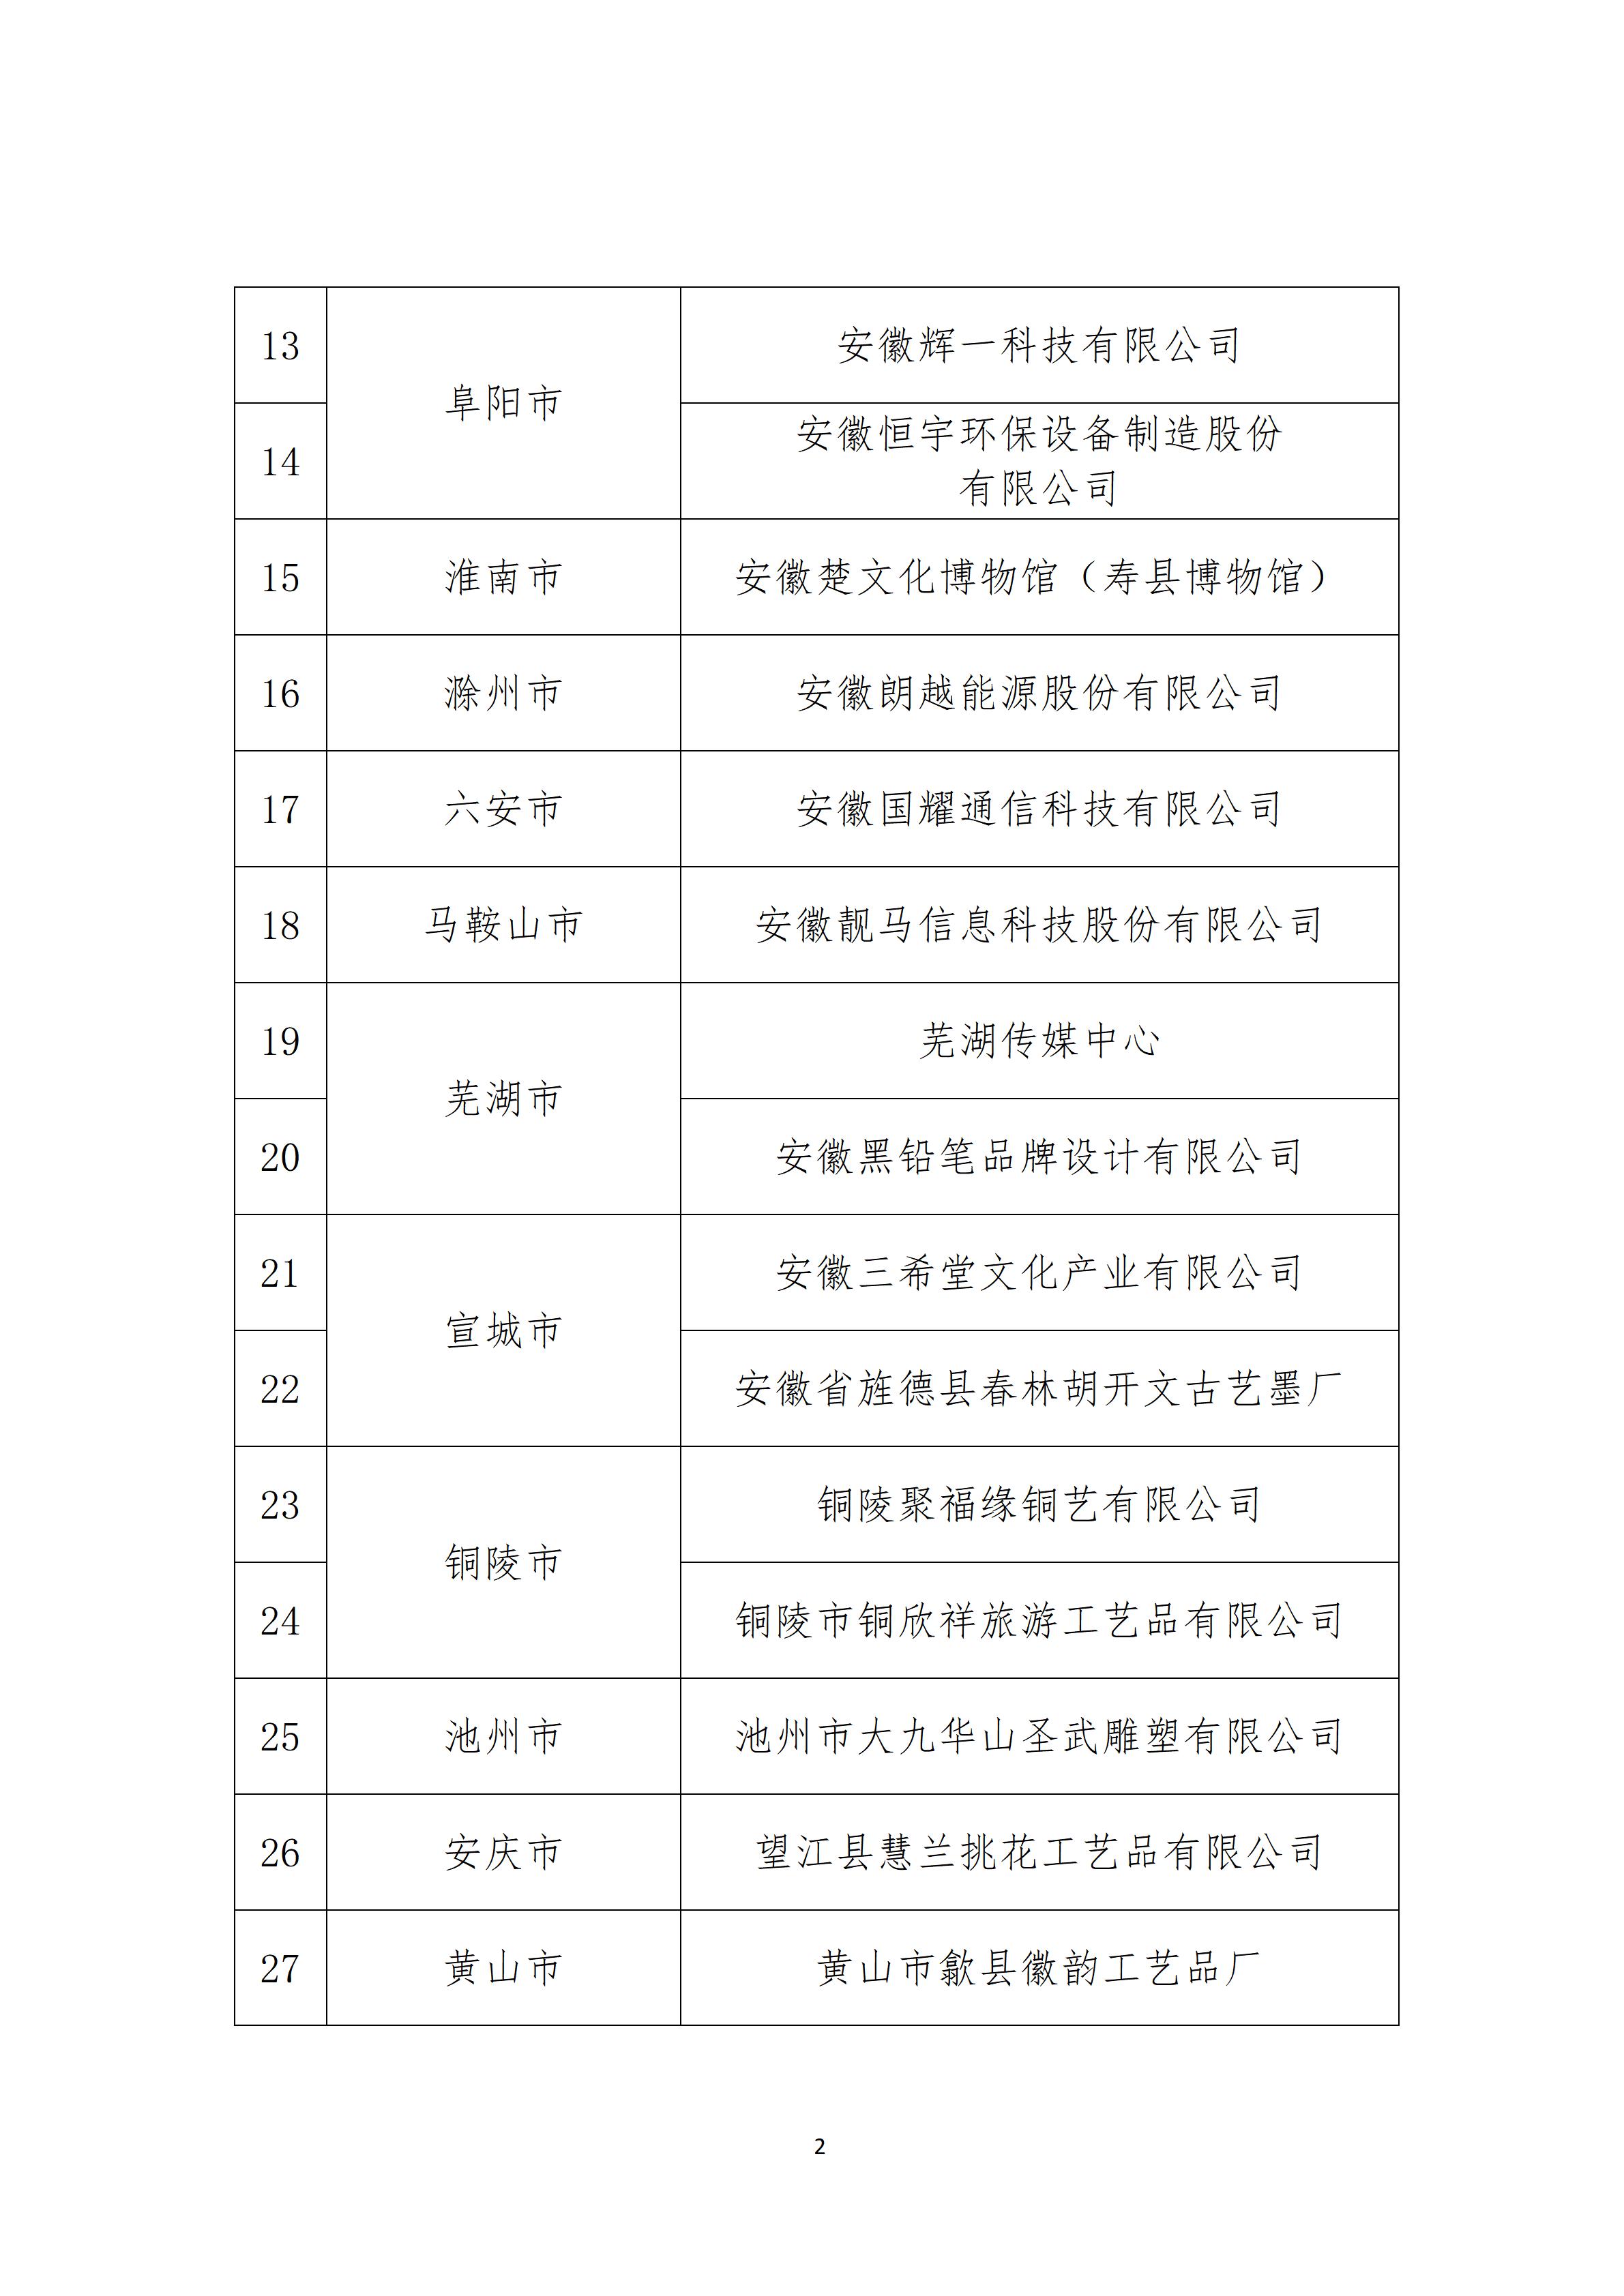 2023年度安徽省版权示范创建公示_03.jpg